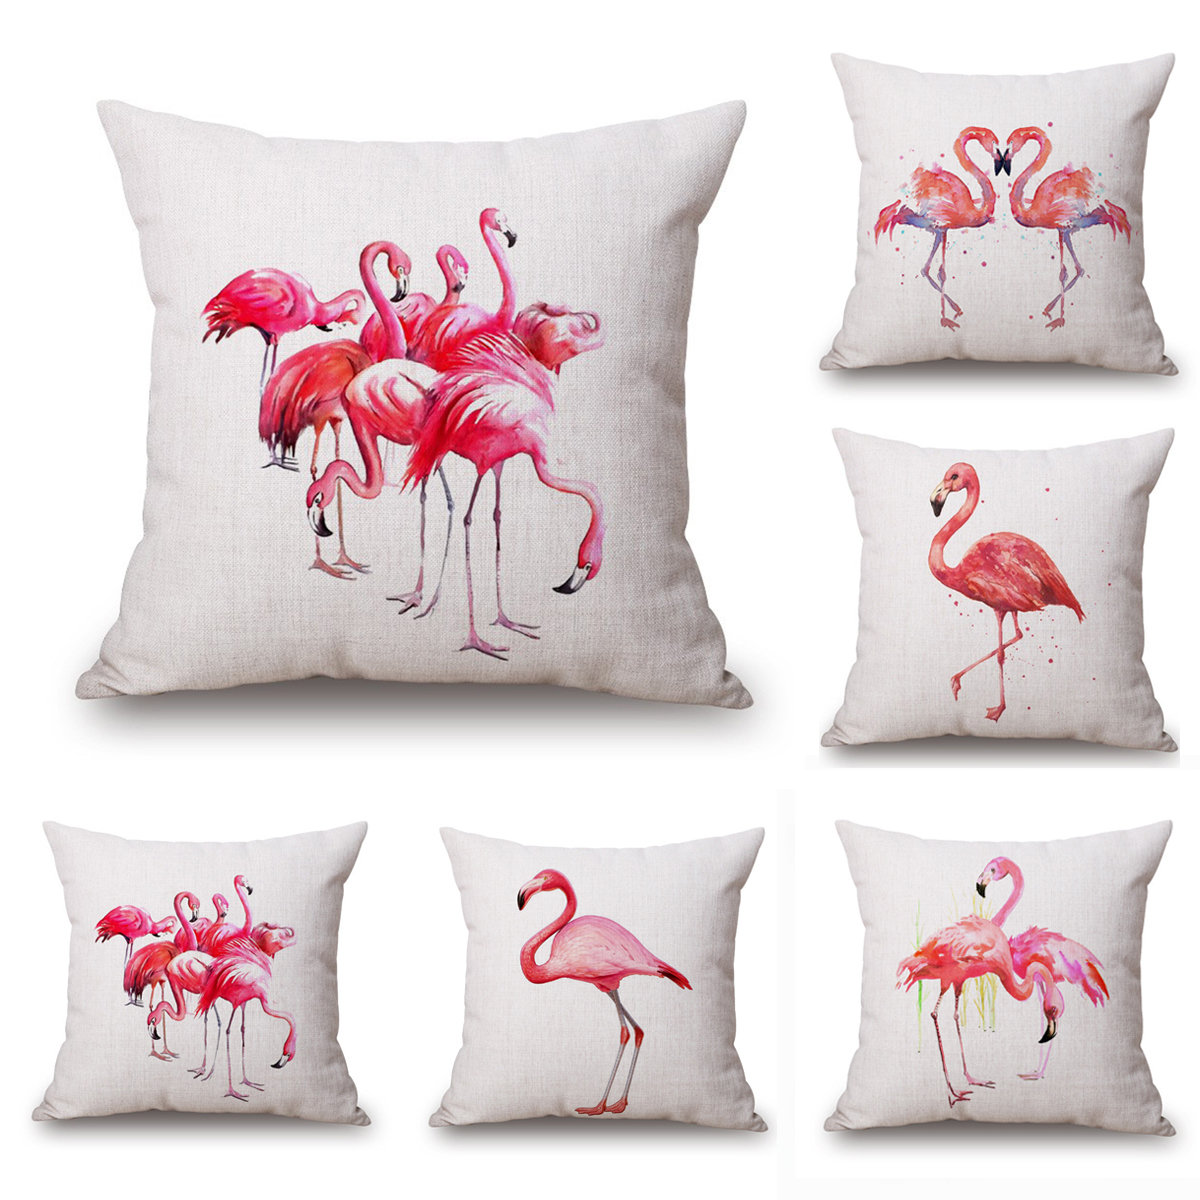 

Flamingo Print Cotton Linen Throw Pillow Case Cushion Cover, White